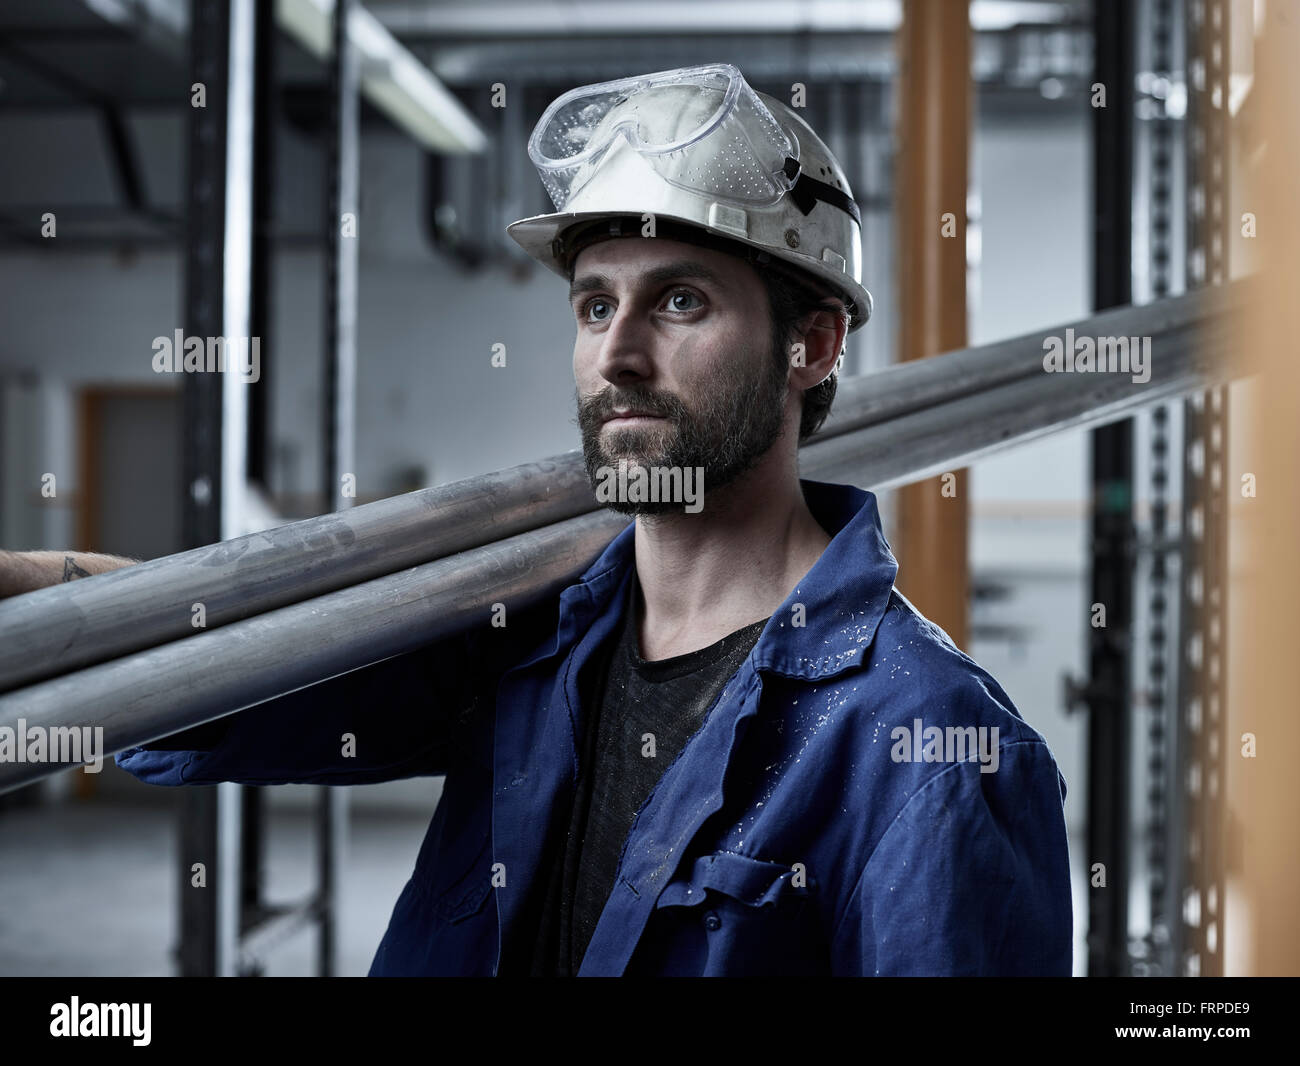 Trabajador mecánico, con cascos y gafas de seguridad llevar tubos en su hombro, Austria Foto de stock